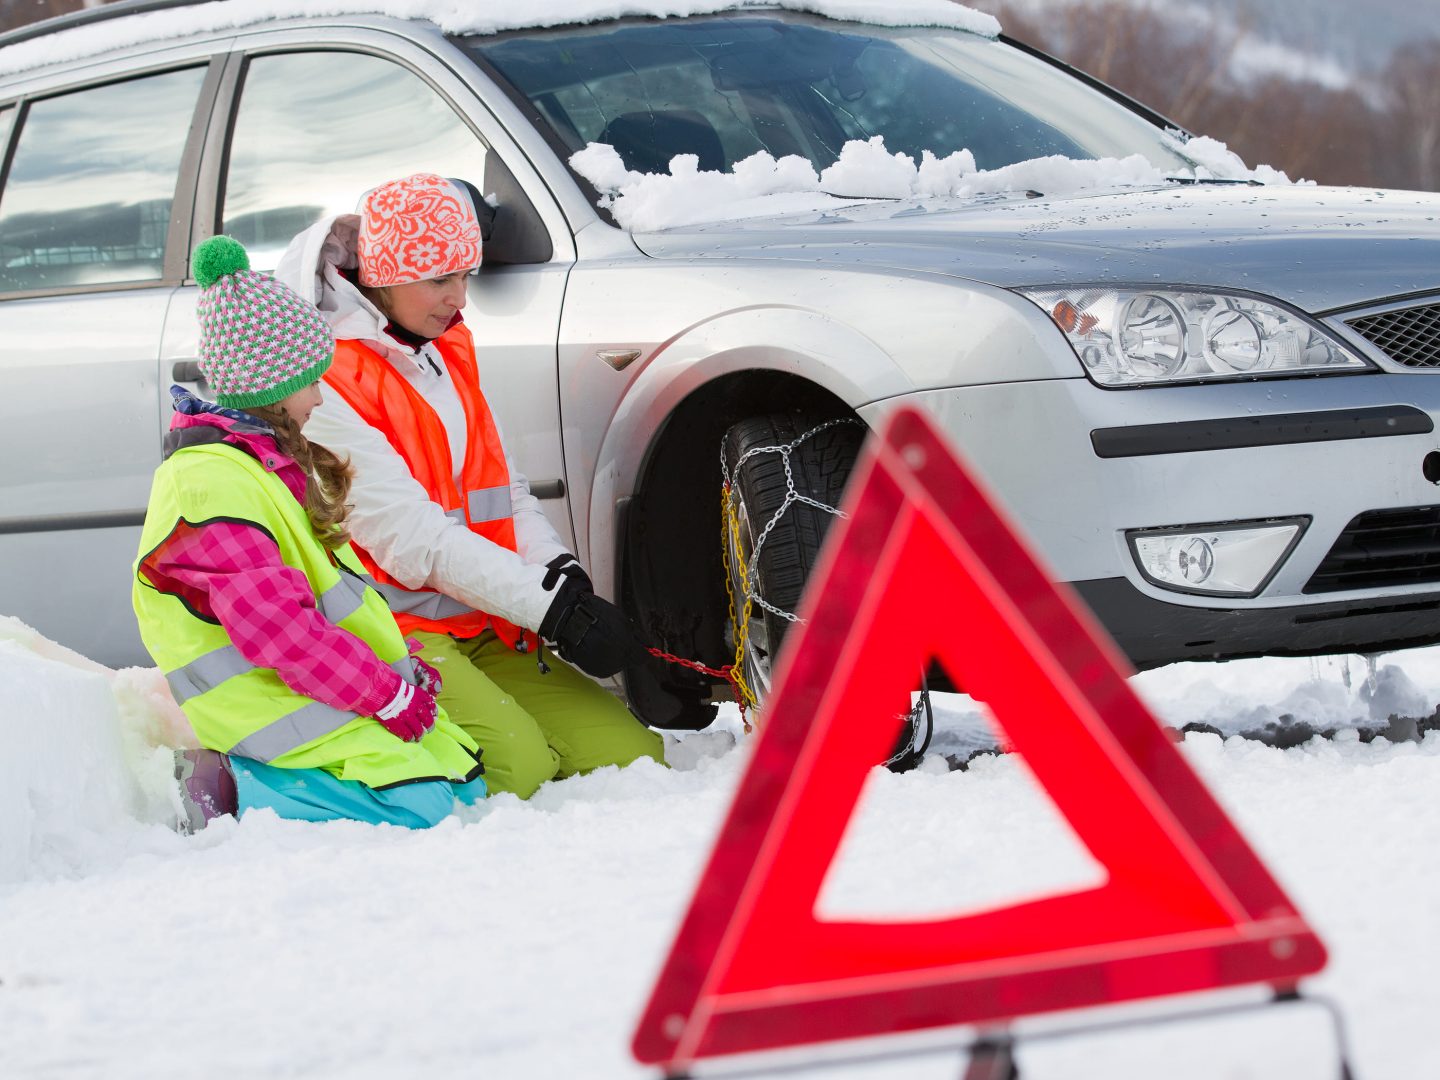 Cómo elegir las cadenas para la nieve adecuadas para tu coche